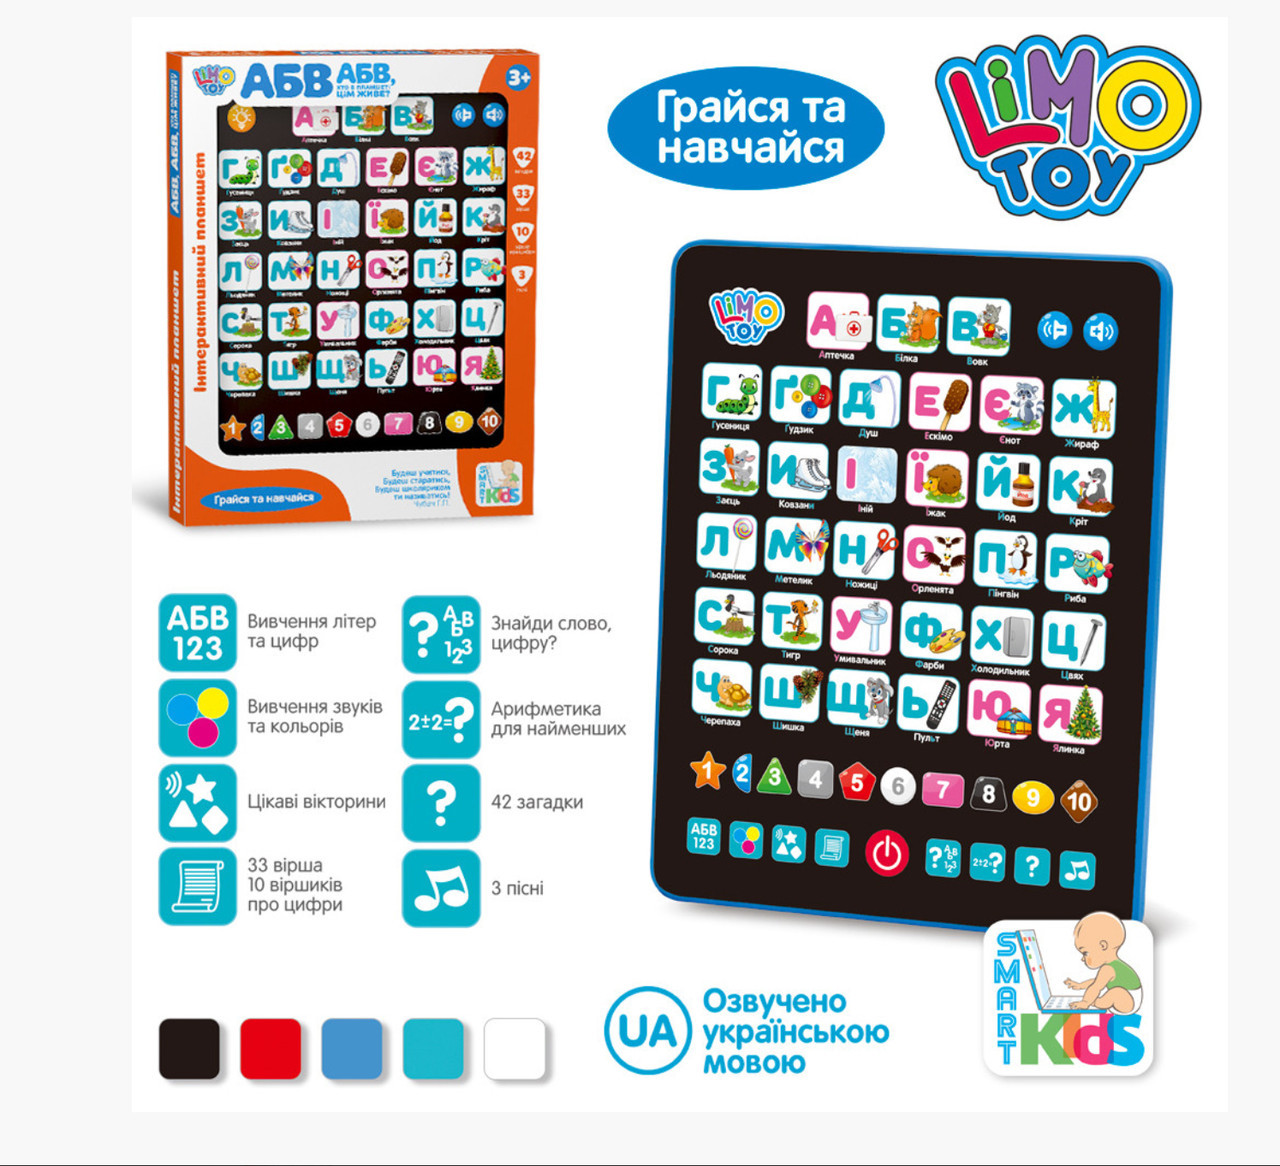 

Детский интерактивный обучающий планшет Limo Toy, SK 0019, озвучен на украинском языке, Разные цвета